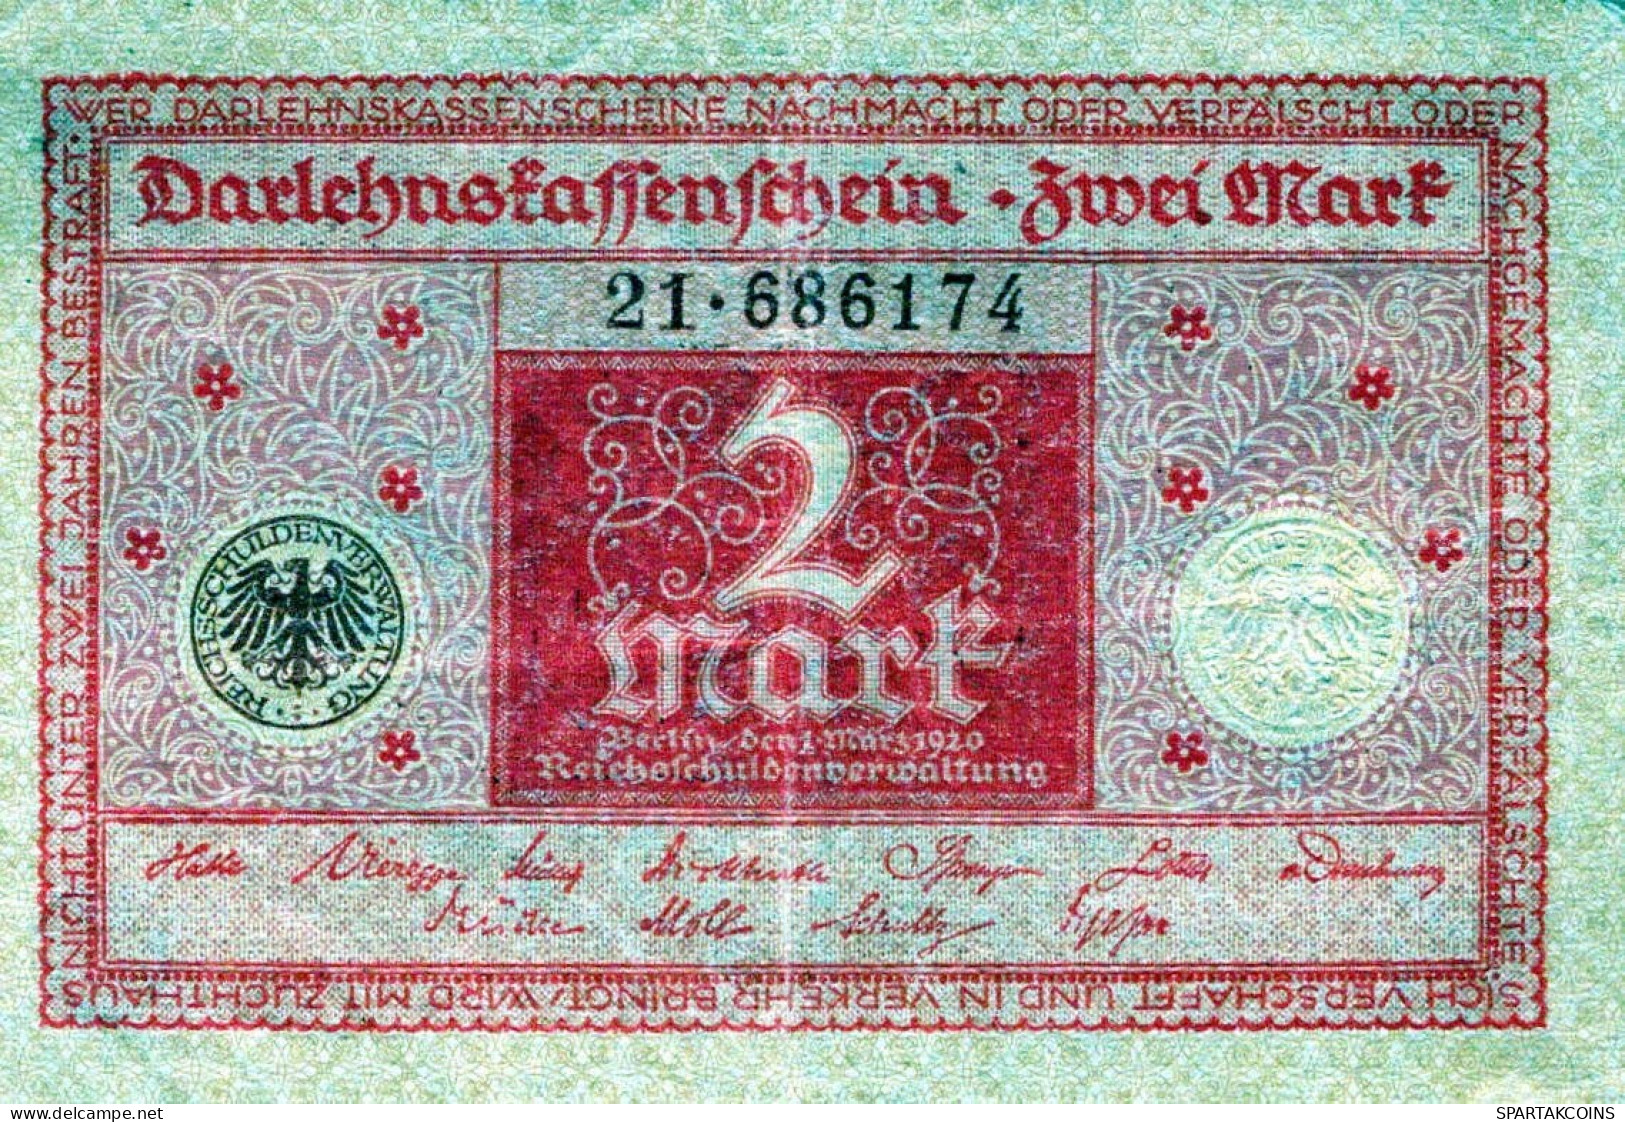 1 MARK 1920 Stadt BERLIN DEUTSCHLAND Papiergeld Banknote #PL183 - [11] Emissioni Locali